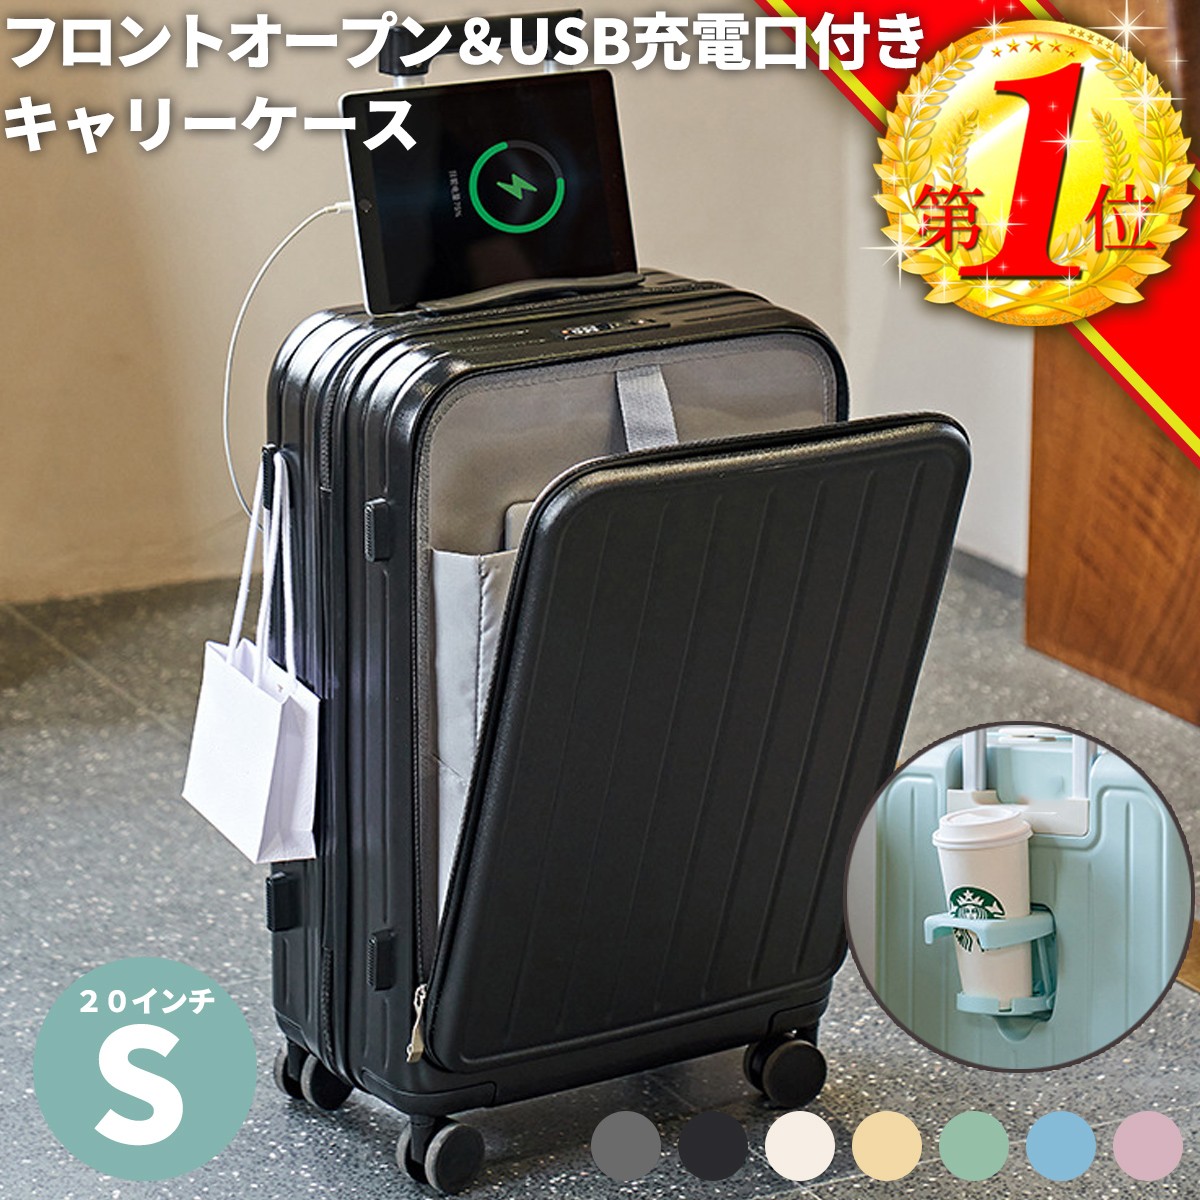 キャリーケース sサイズ スーツケース キャリーバッグ 機内持ち込み ドリンクホルダー フロントオープン アルミ USBポート付き フック付き  おしゃれ 静音 40L